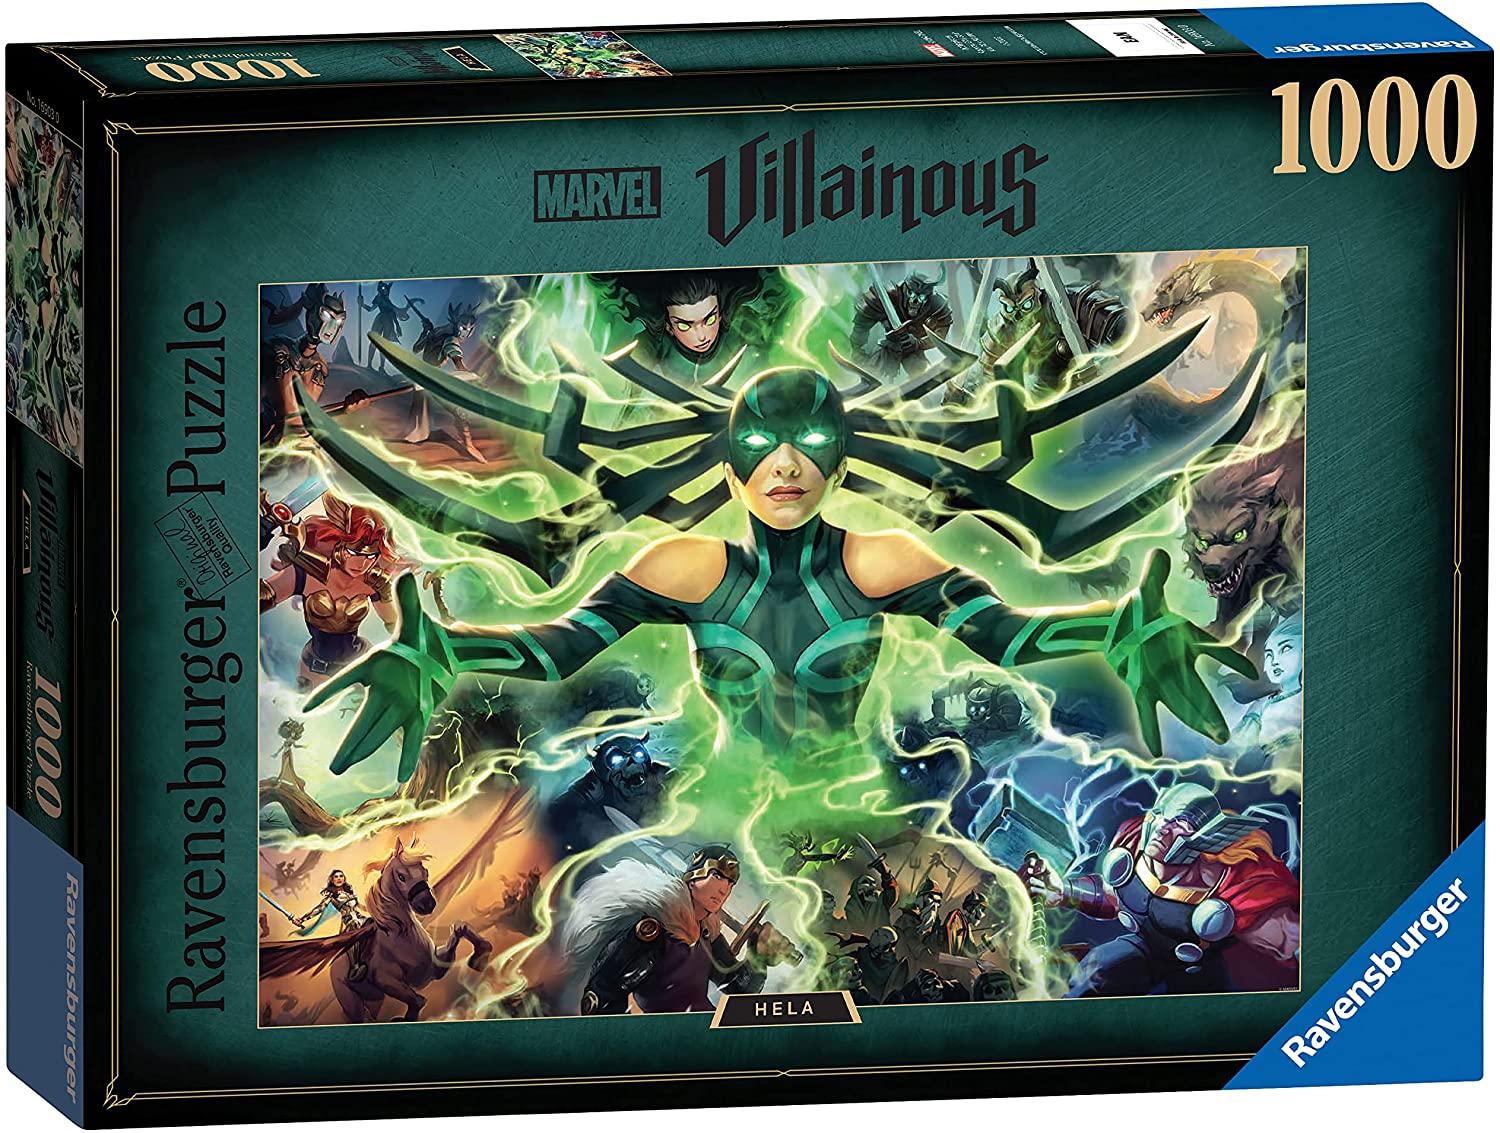 Ravensburger Marvel Villainous Hela 1000 Piece Jigsaw Puzzles